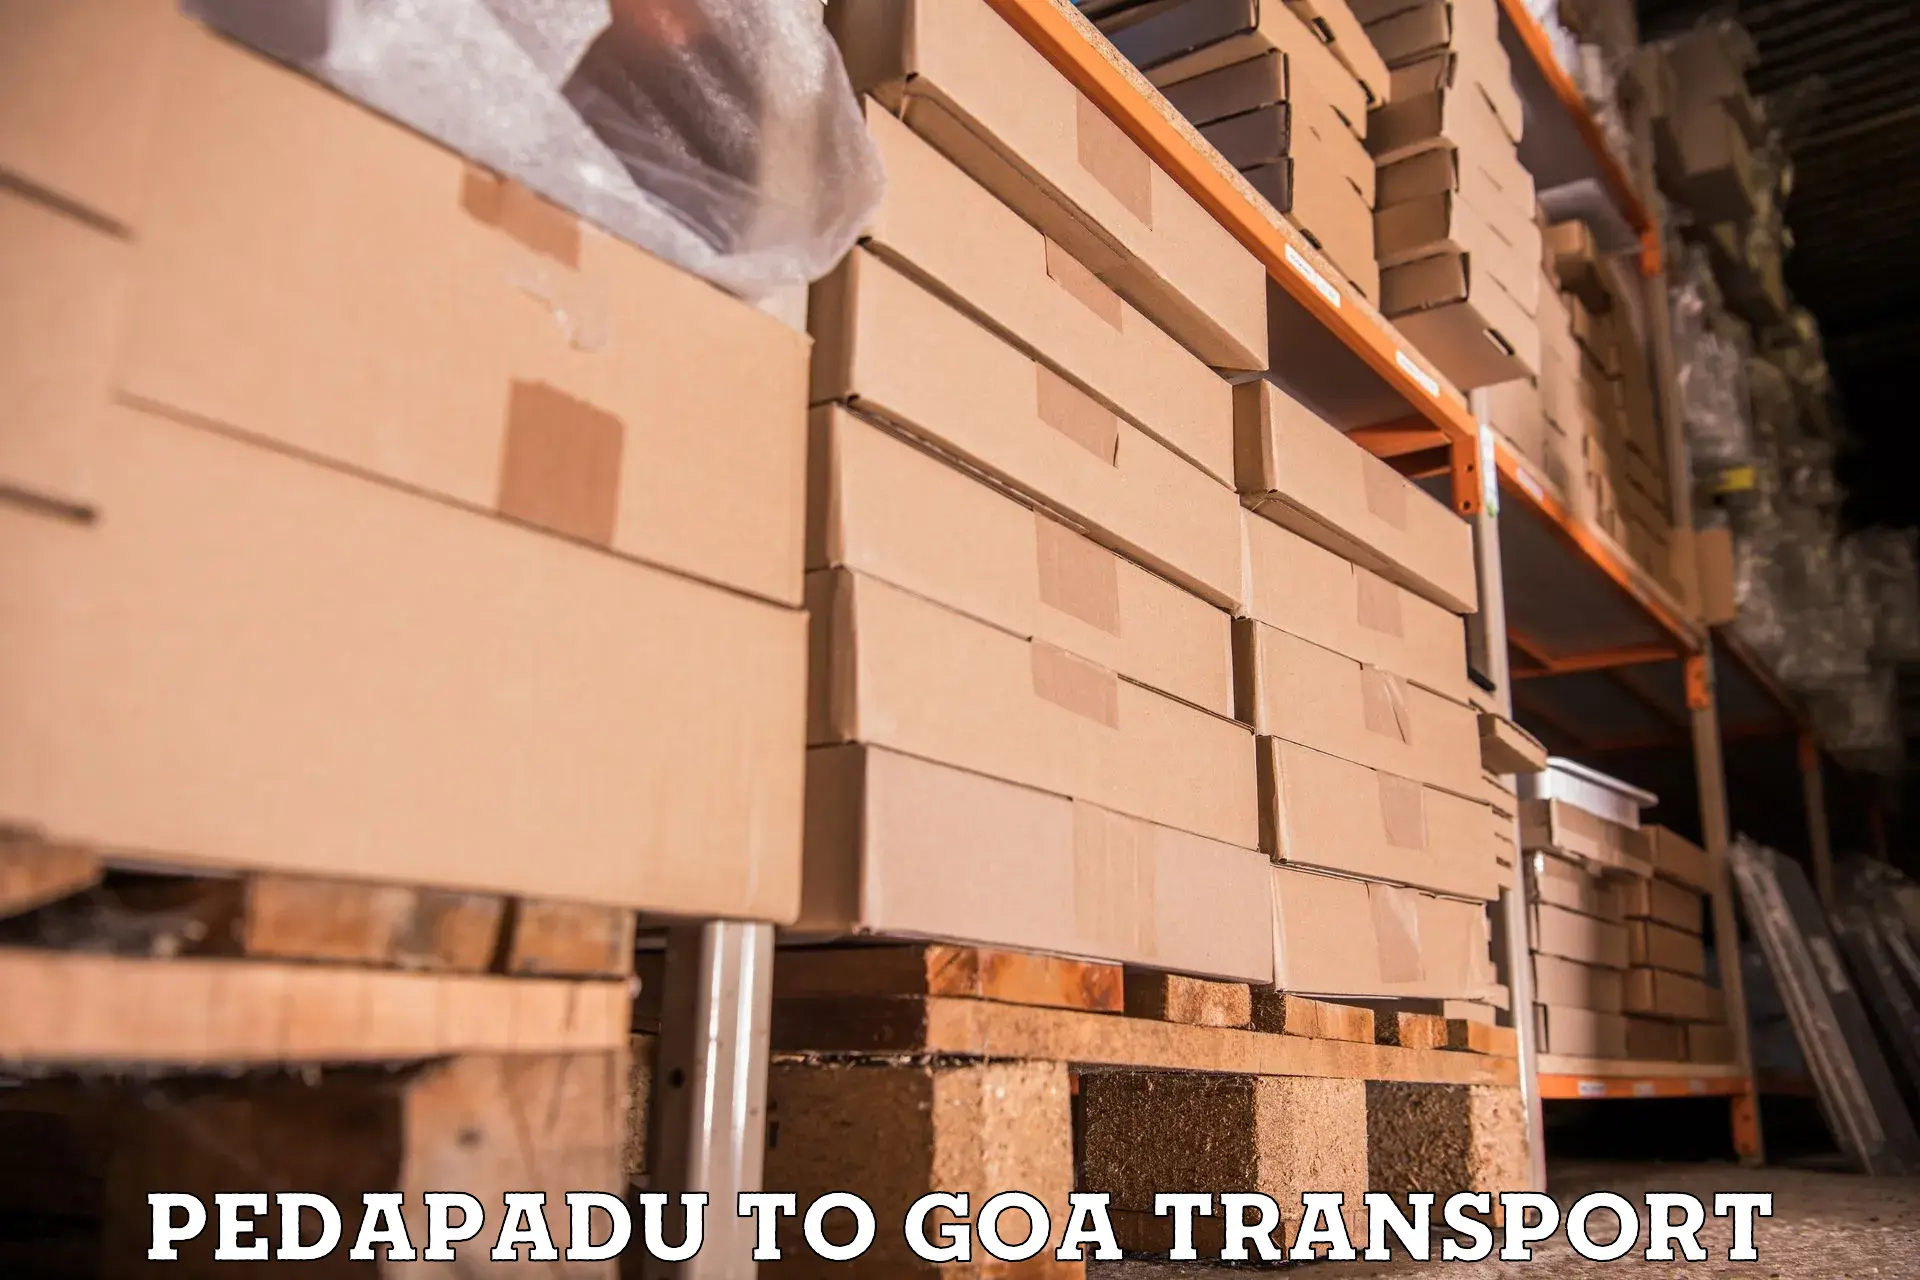 Daily transport service Pedapadu to Vasco da Gama